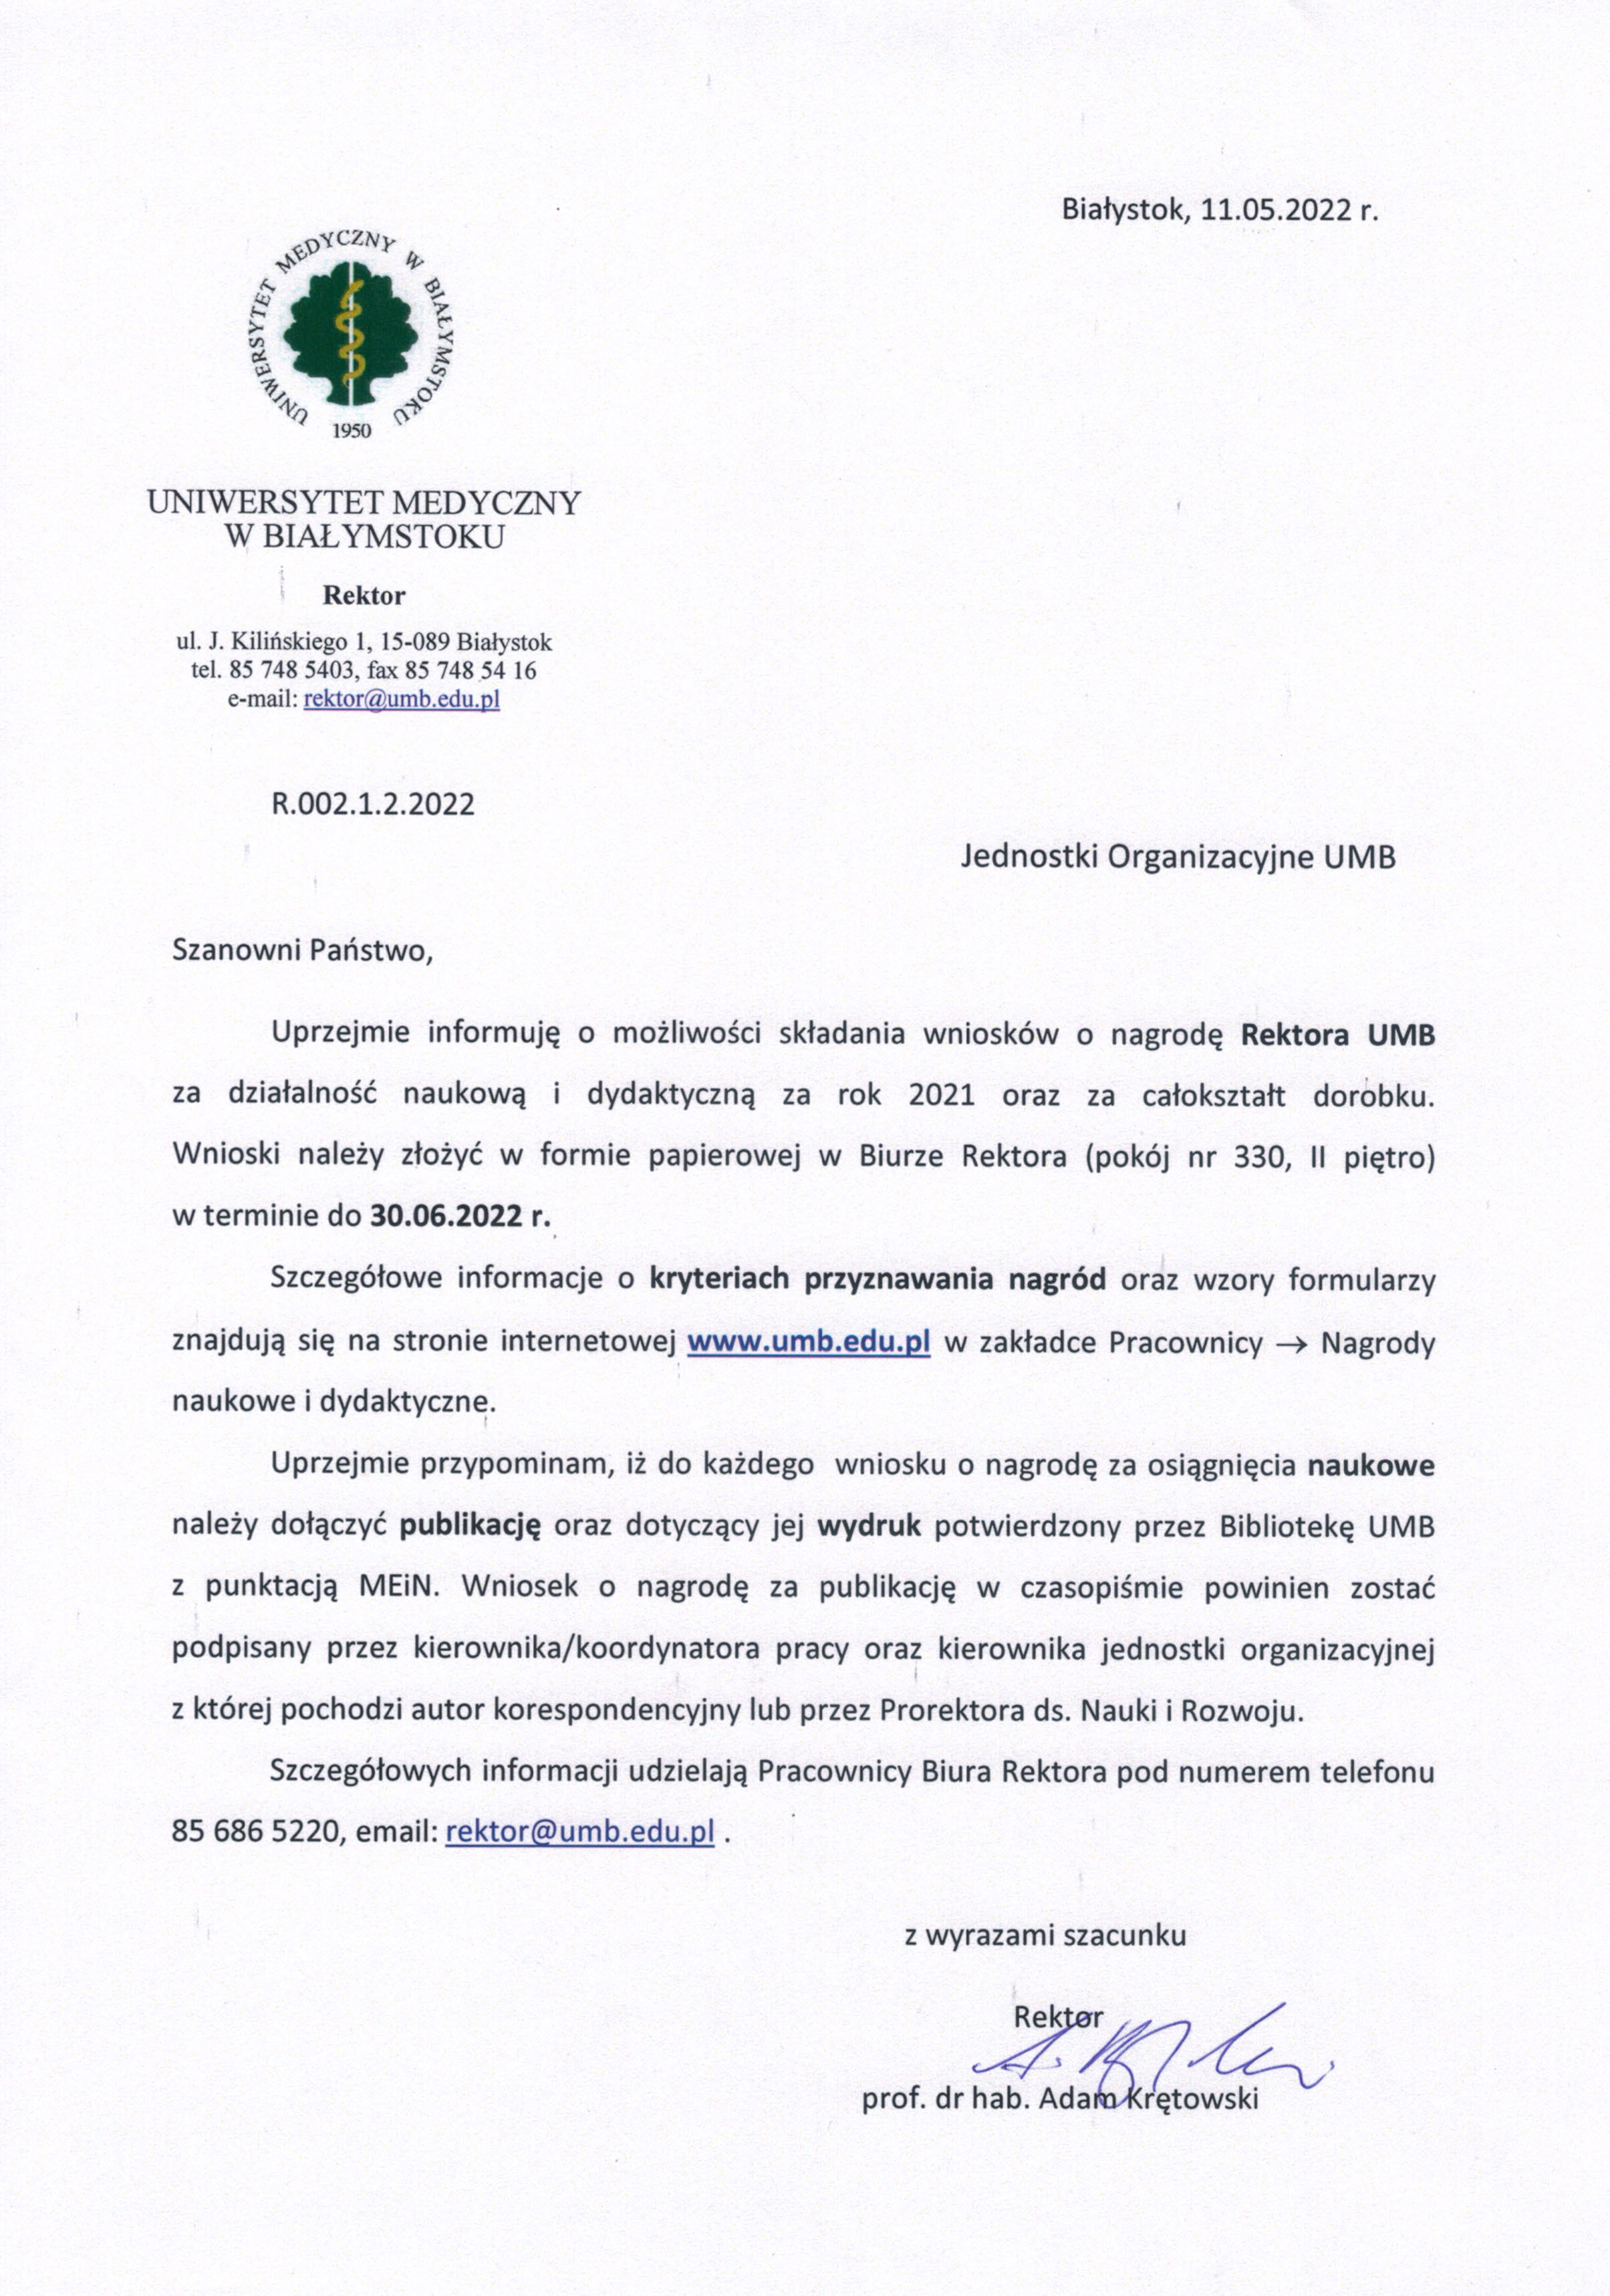 Pismo informacyjne Rektora UMB w sprawie składania wniosków na nagrodę rektora